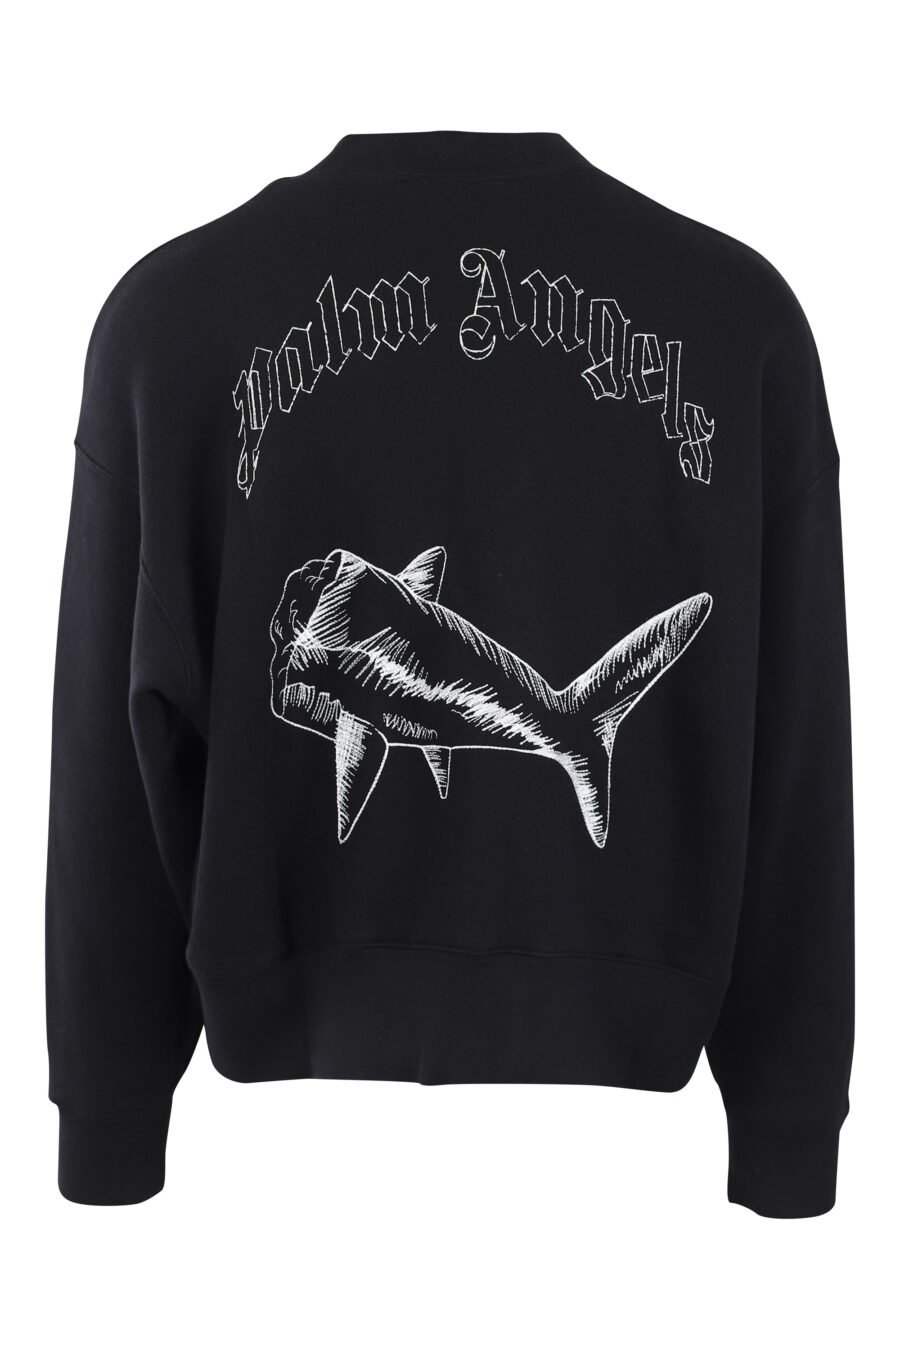 Schwarzes Sweatshirt mit weißem gesticktem Hai und Logo auf dem Rücken - IMG 2566